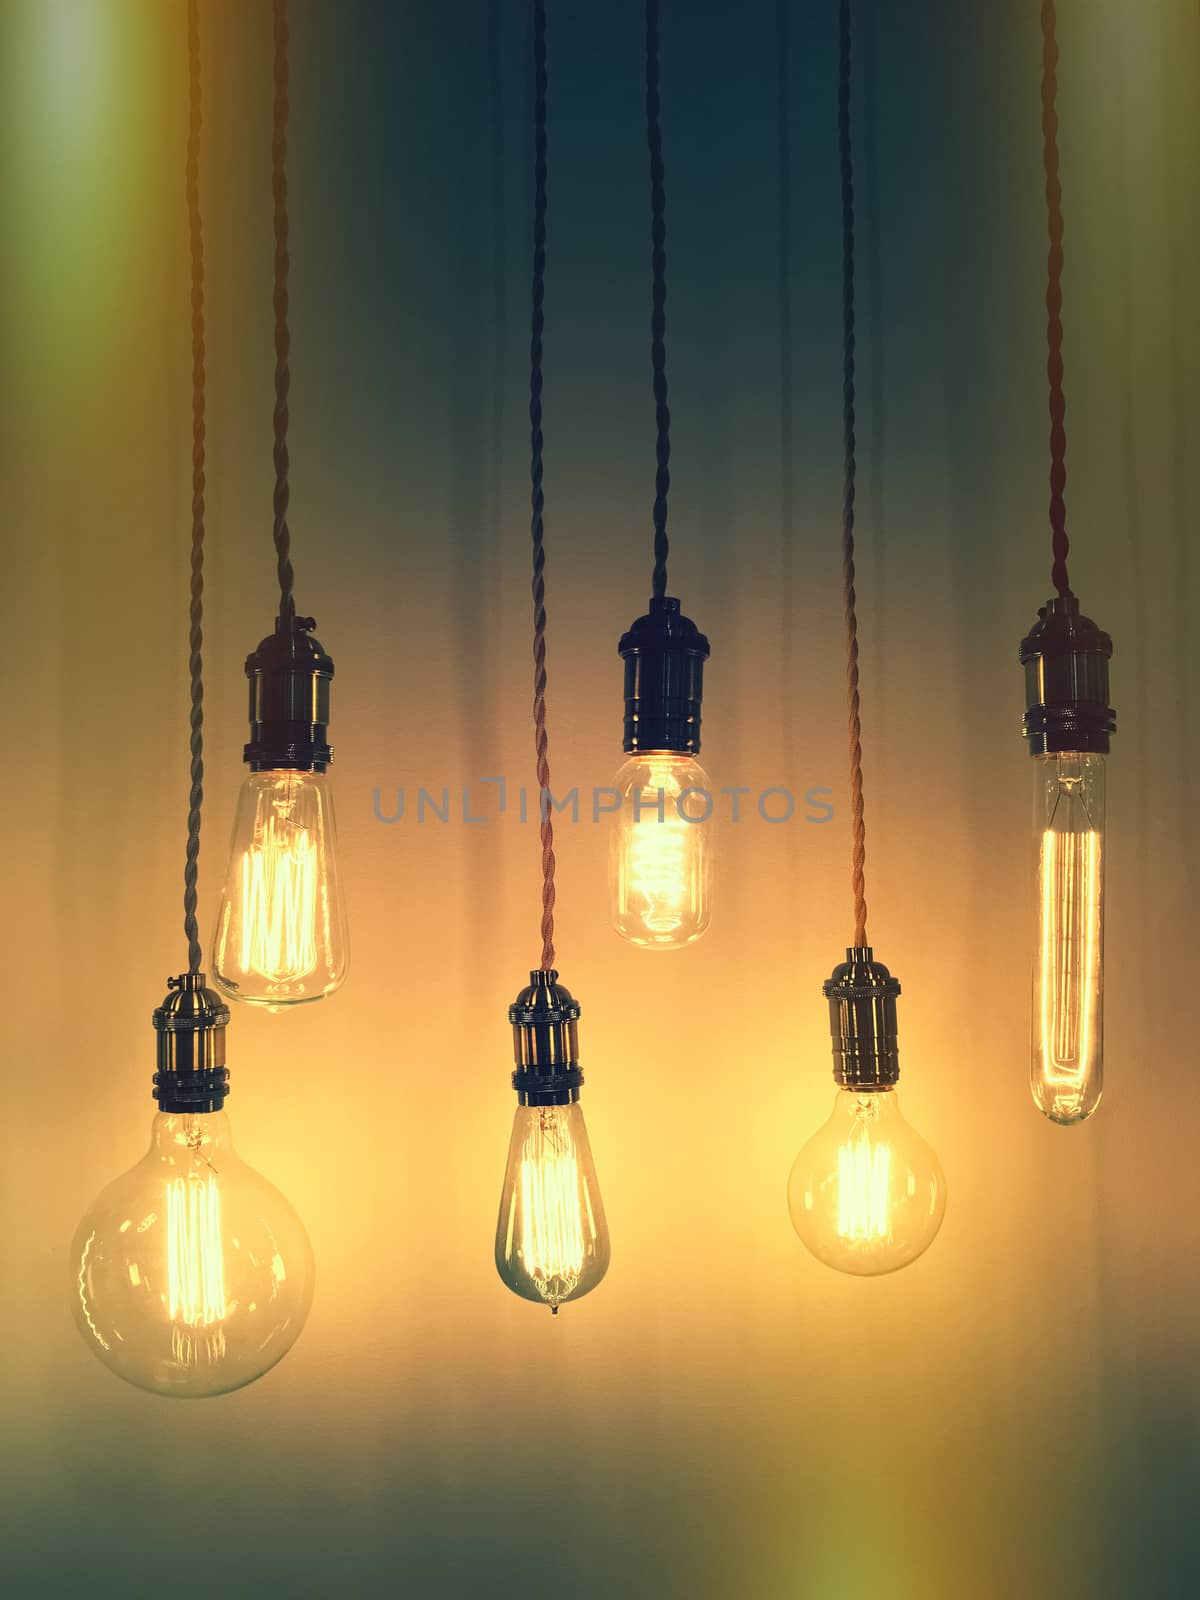 Illuminated retro style light bulbs. Trendy design. 